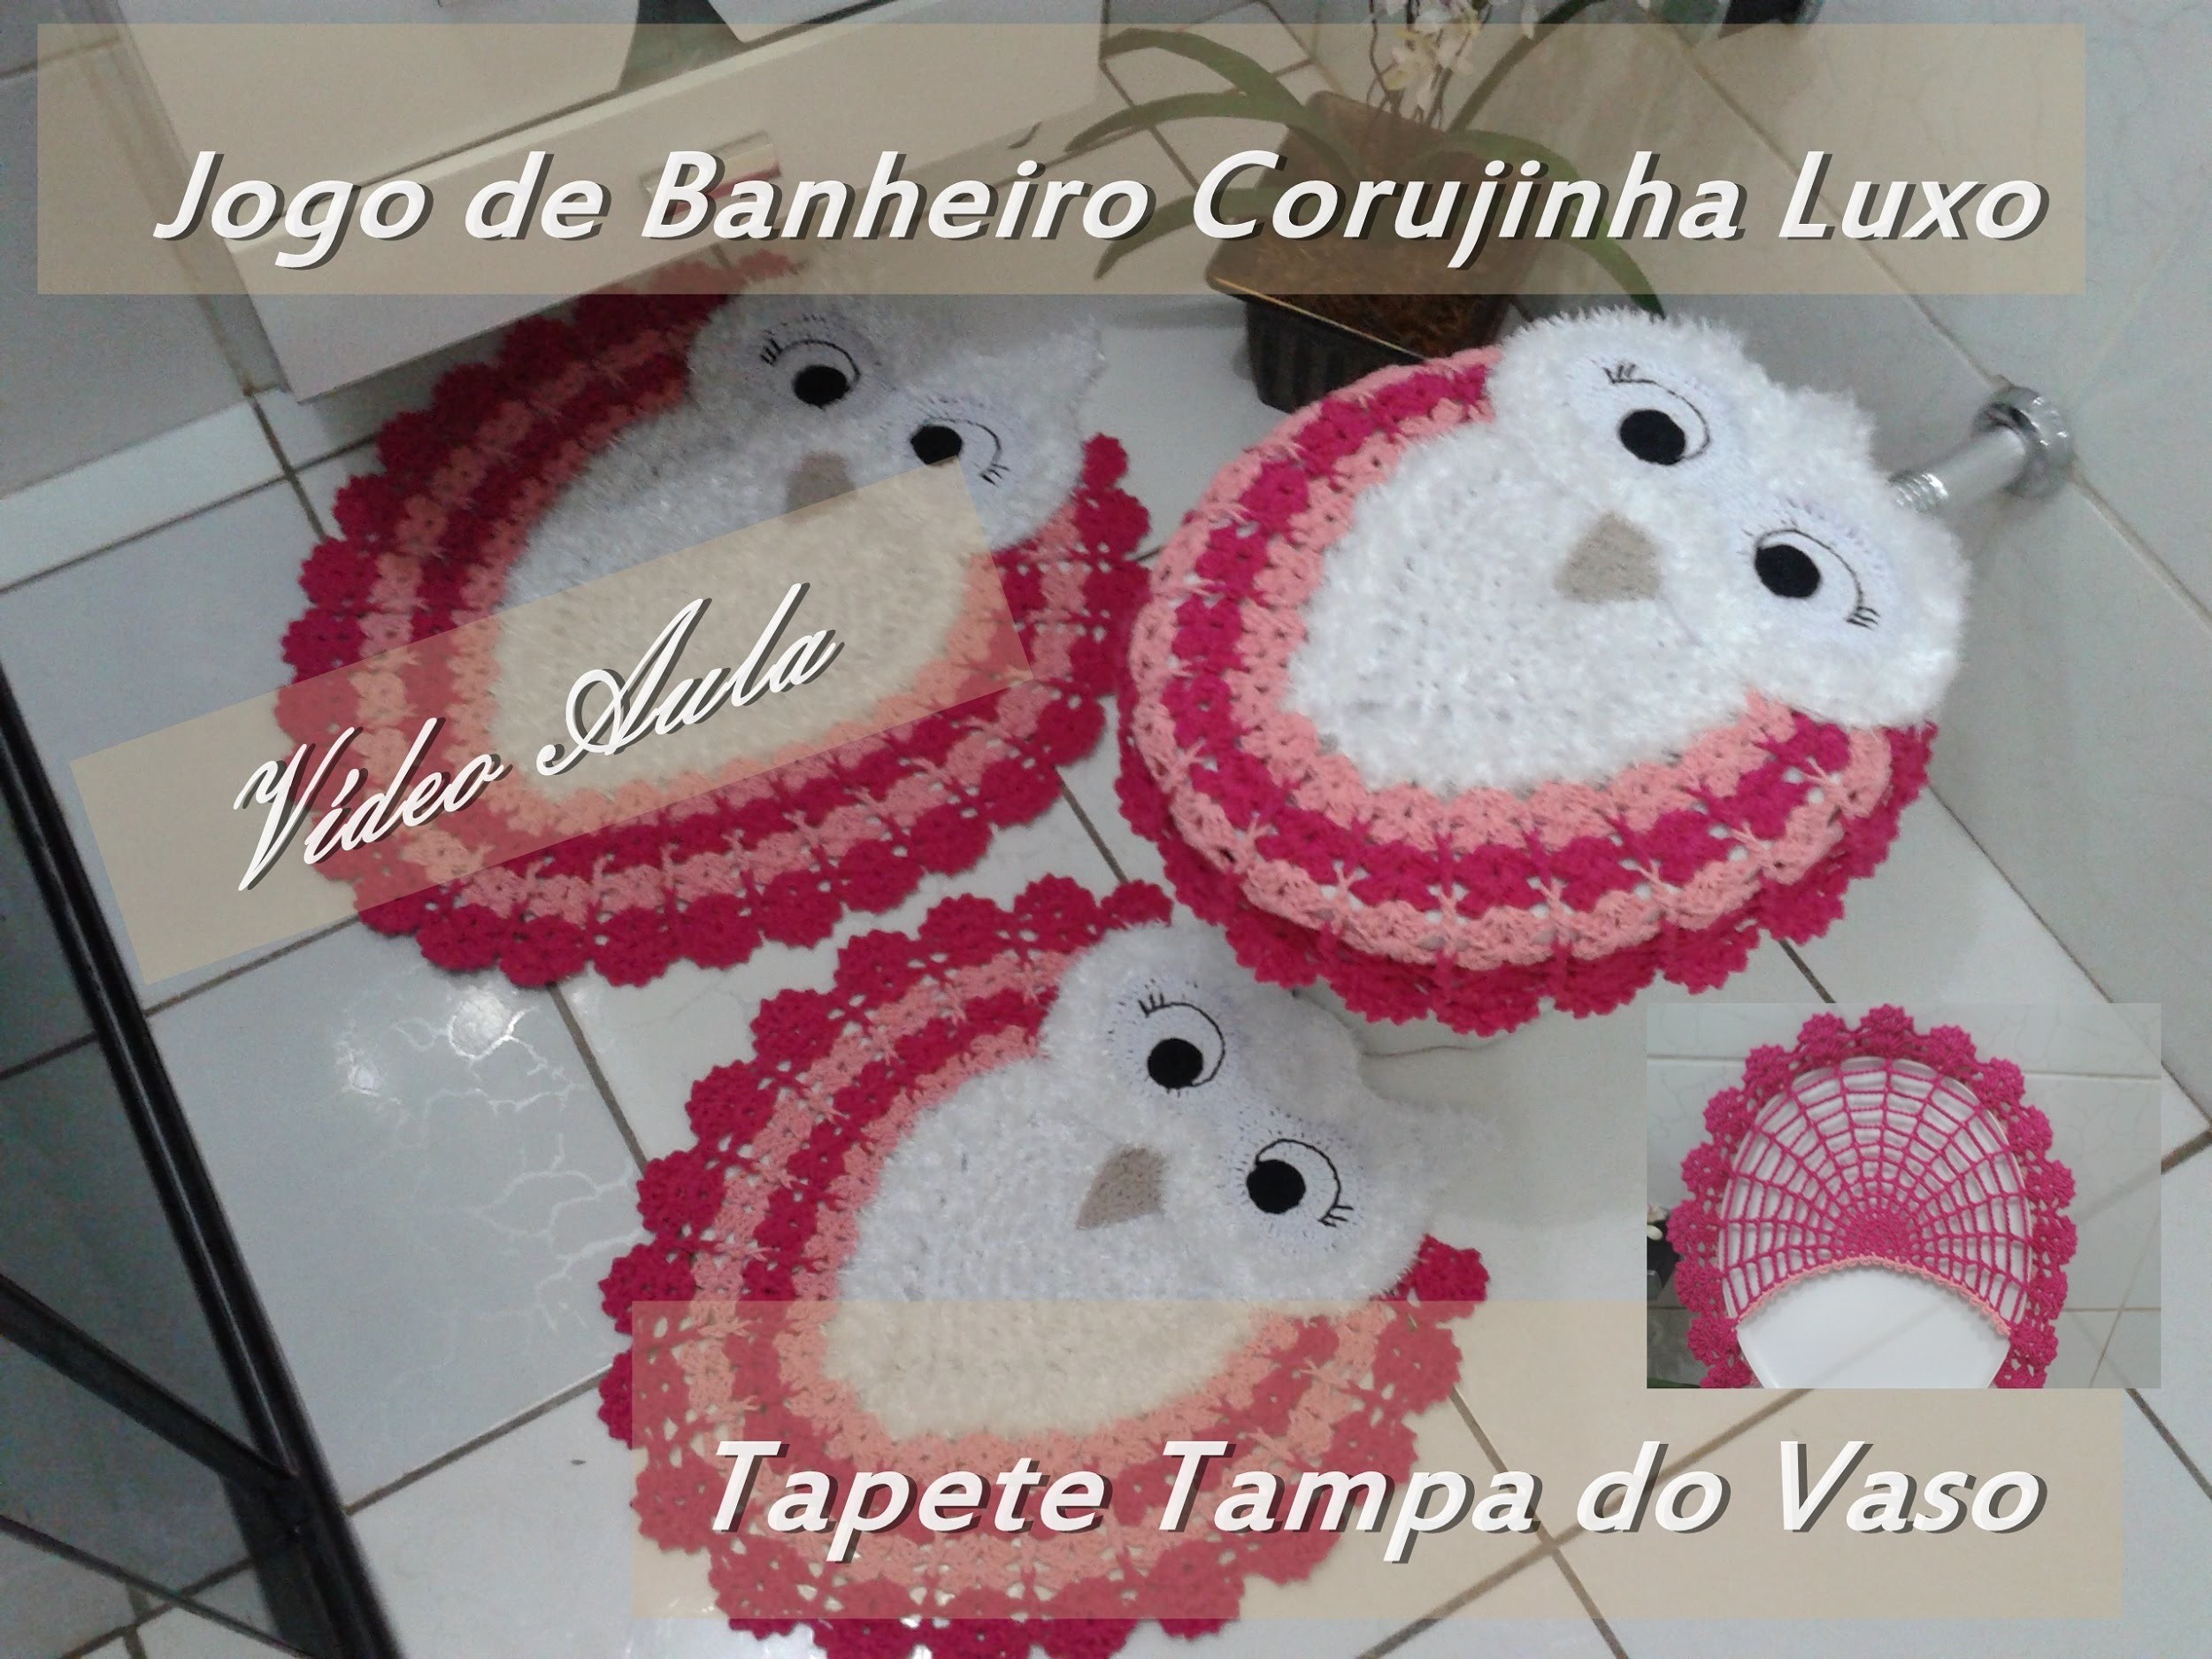 Jogo de Banheiro Corujinha Luxo "Tapete Tampa do Vaso"